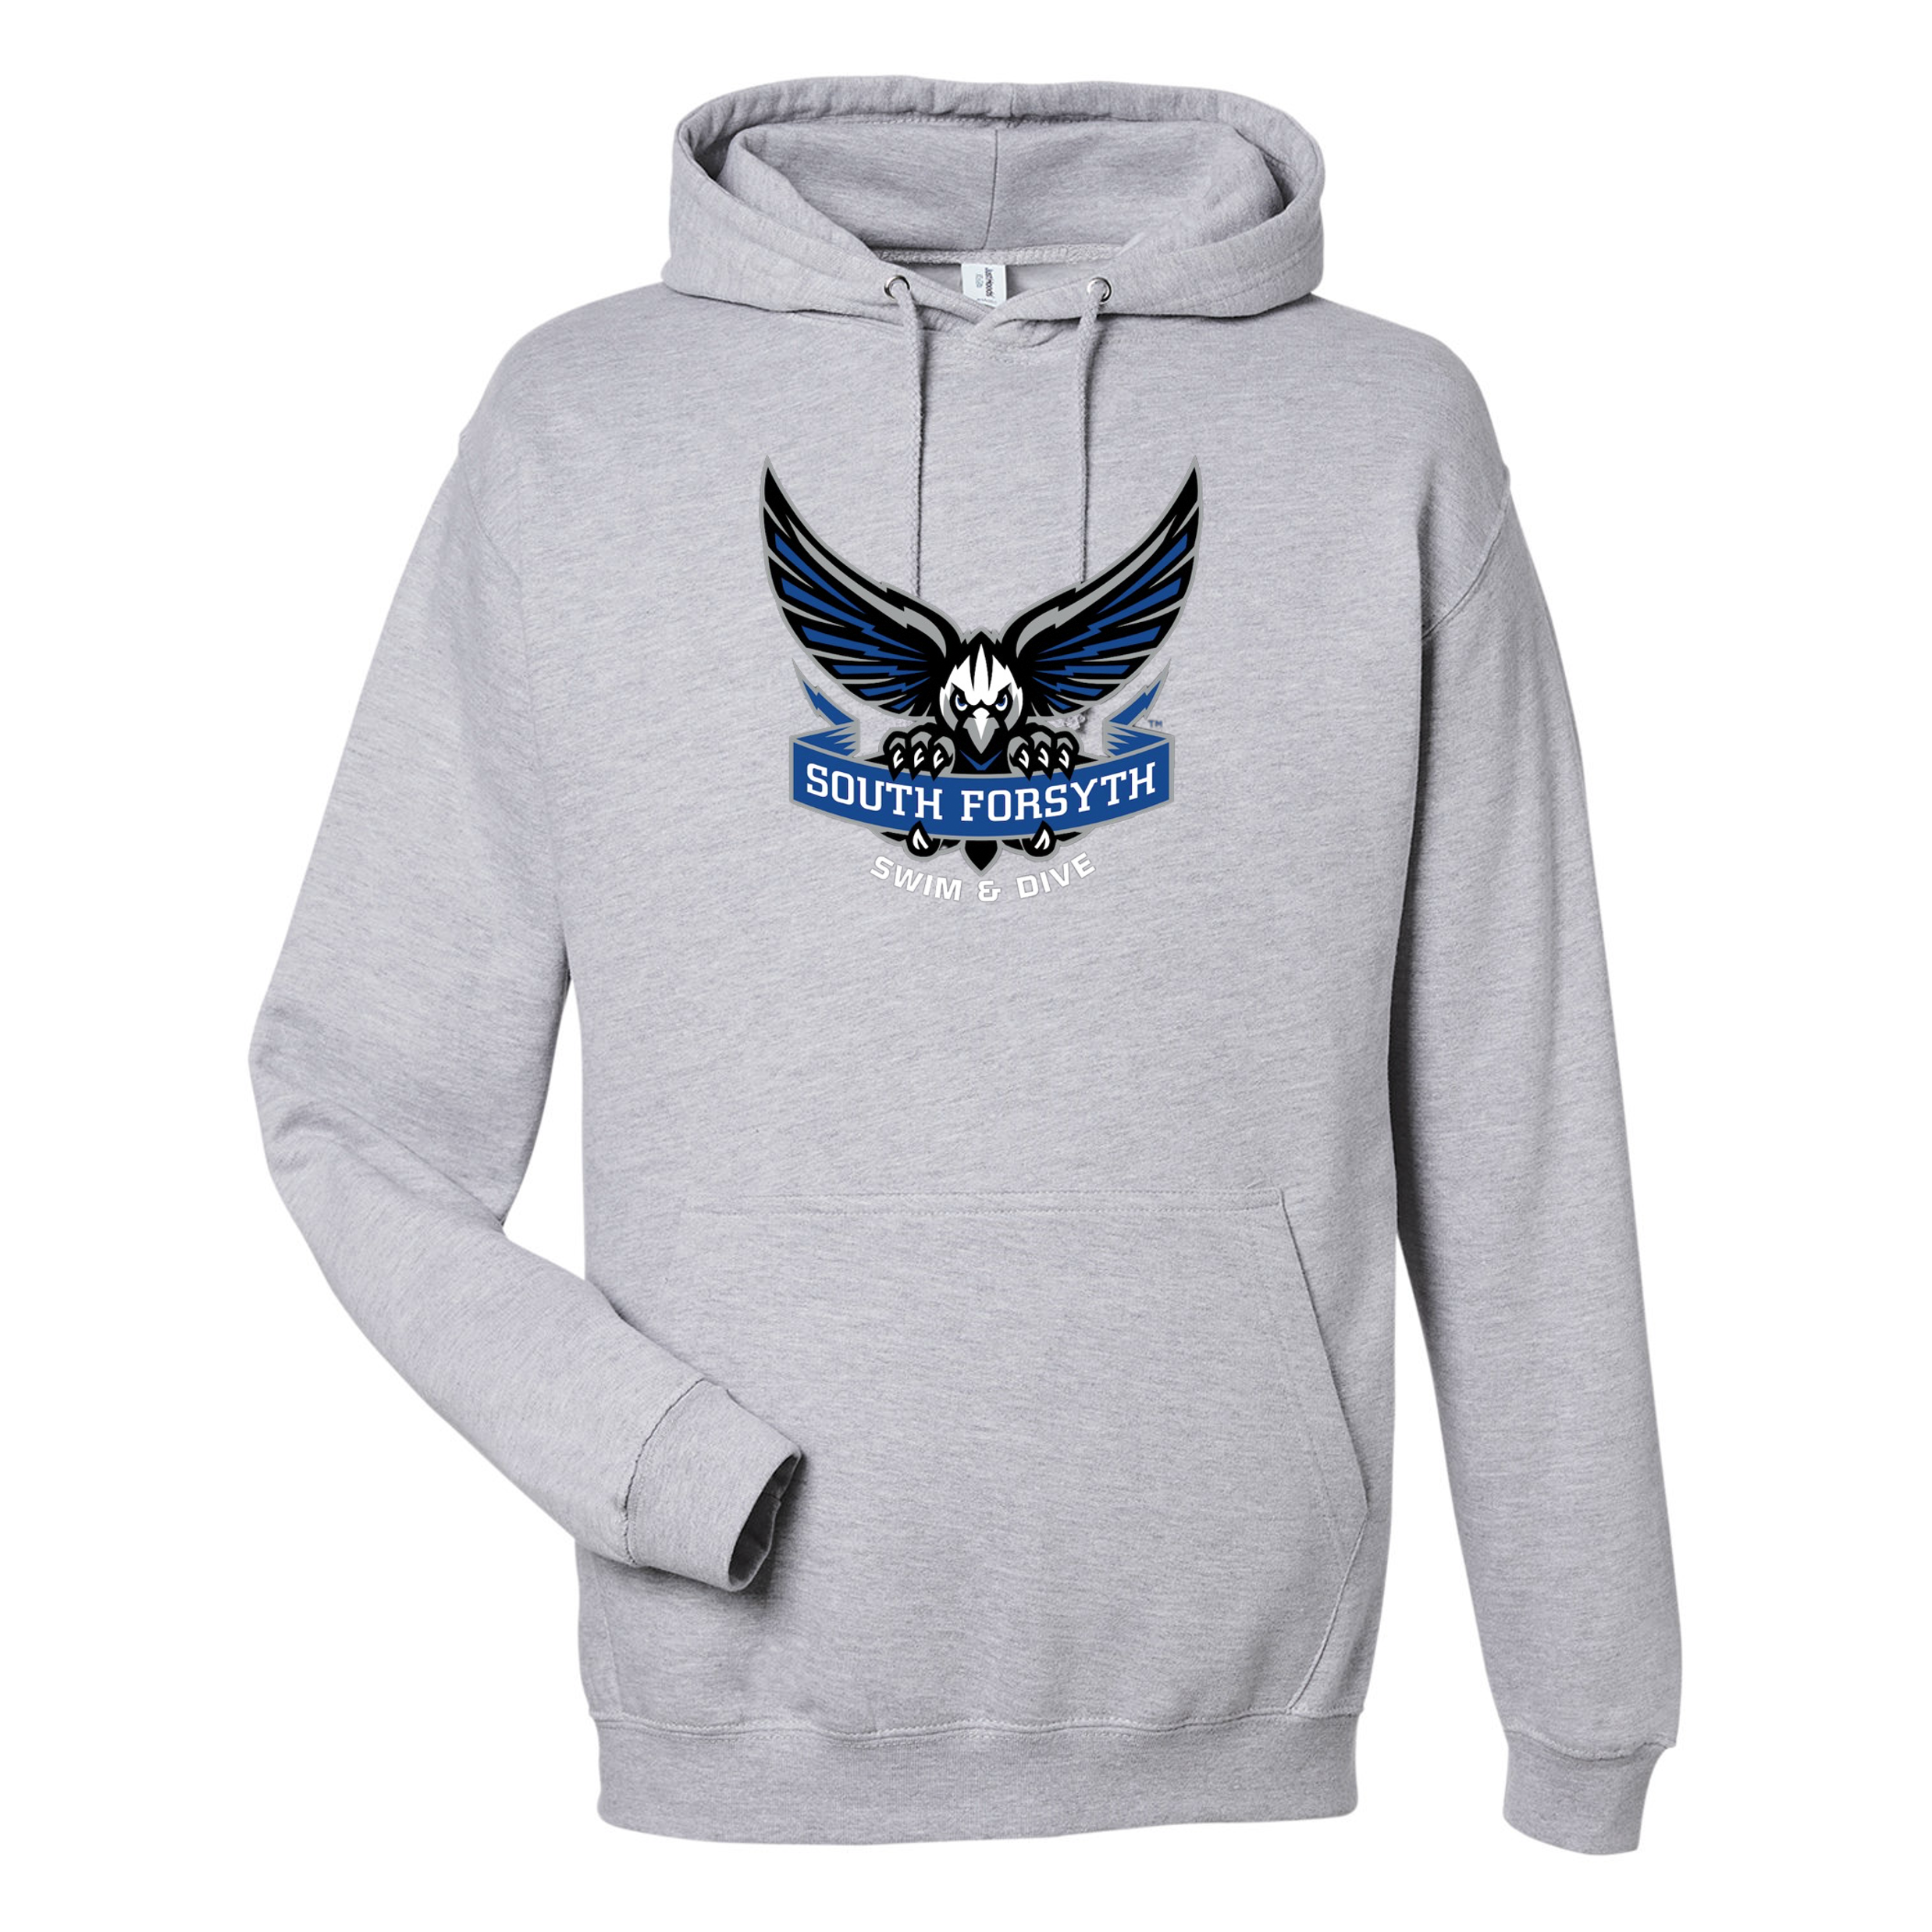 Unisex Hooded Sweatshirt (Customized) - South Forsyth